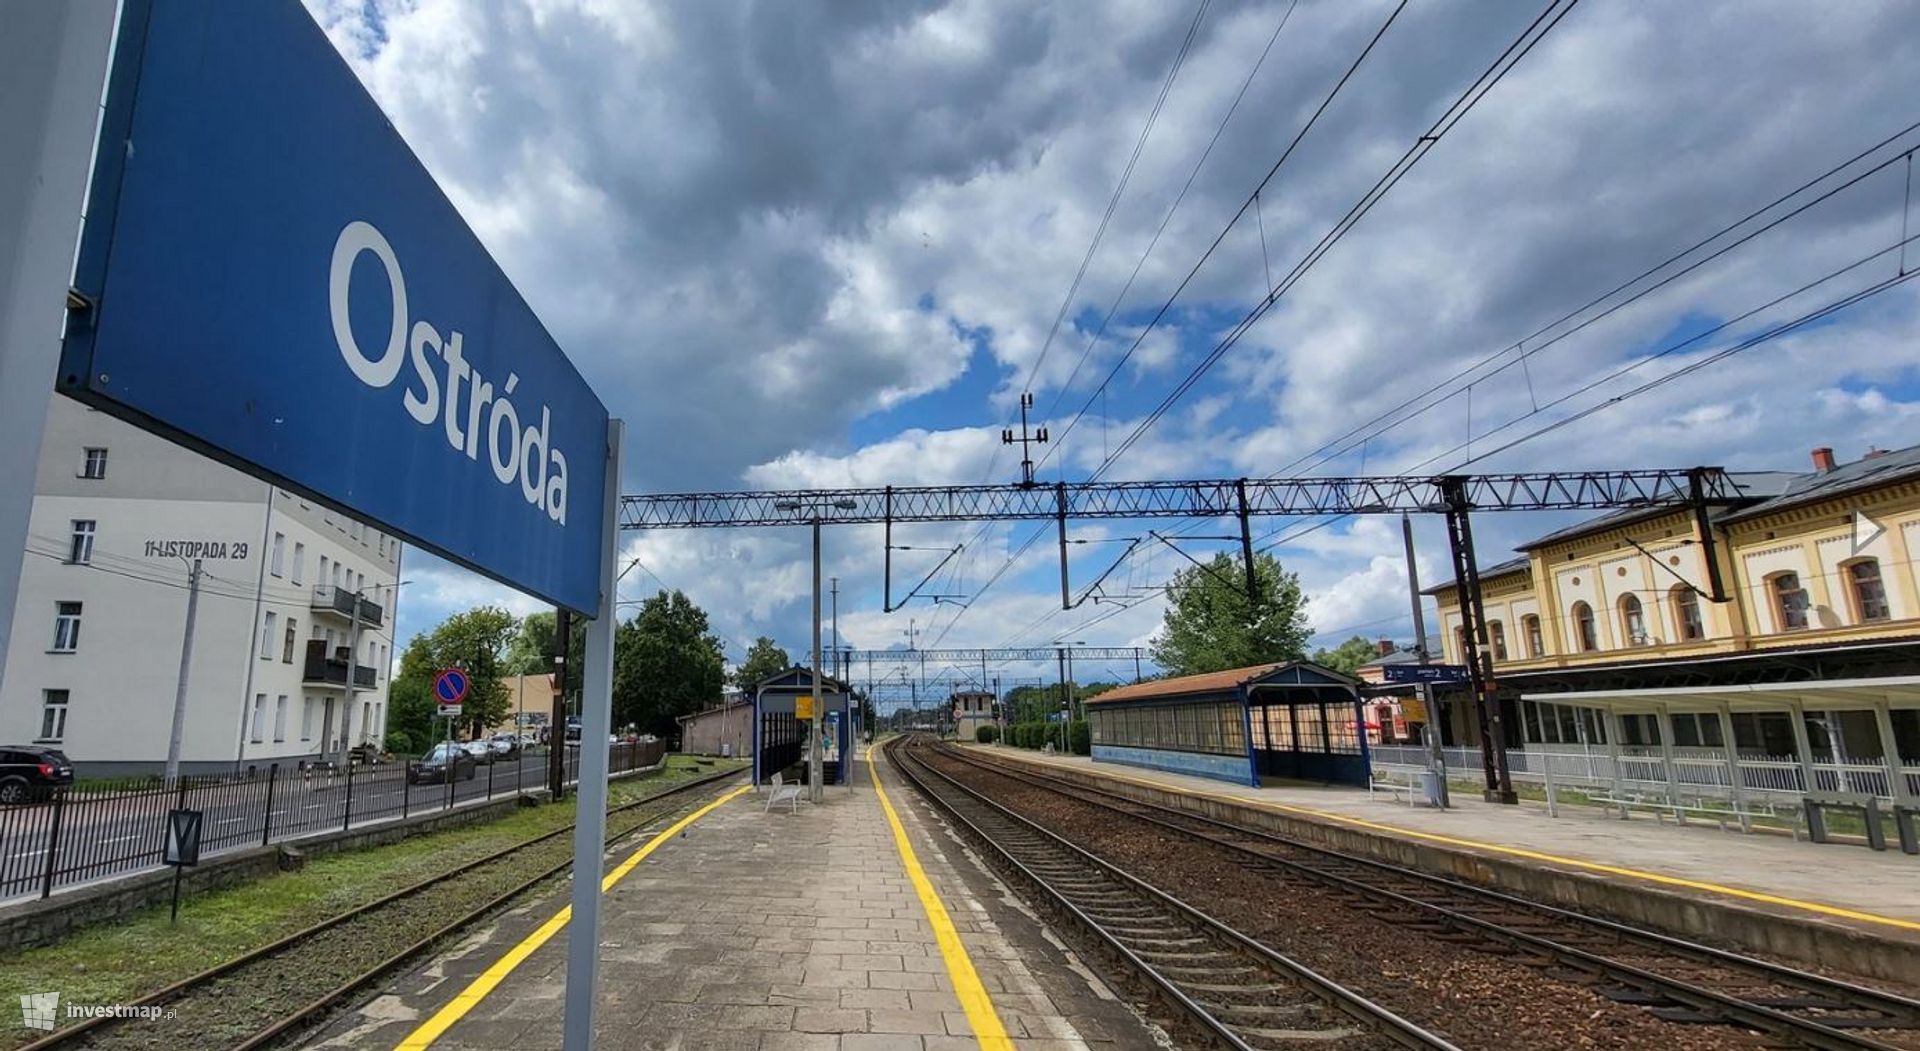 Za ćwierć miliarda złotych modernizowana jest stacja kolejowa Ostróda 